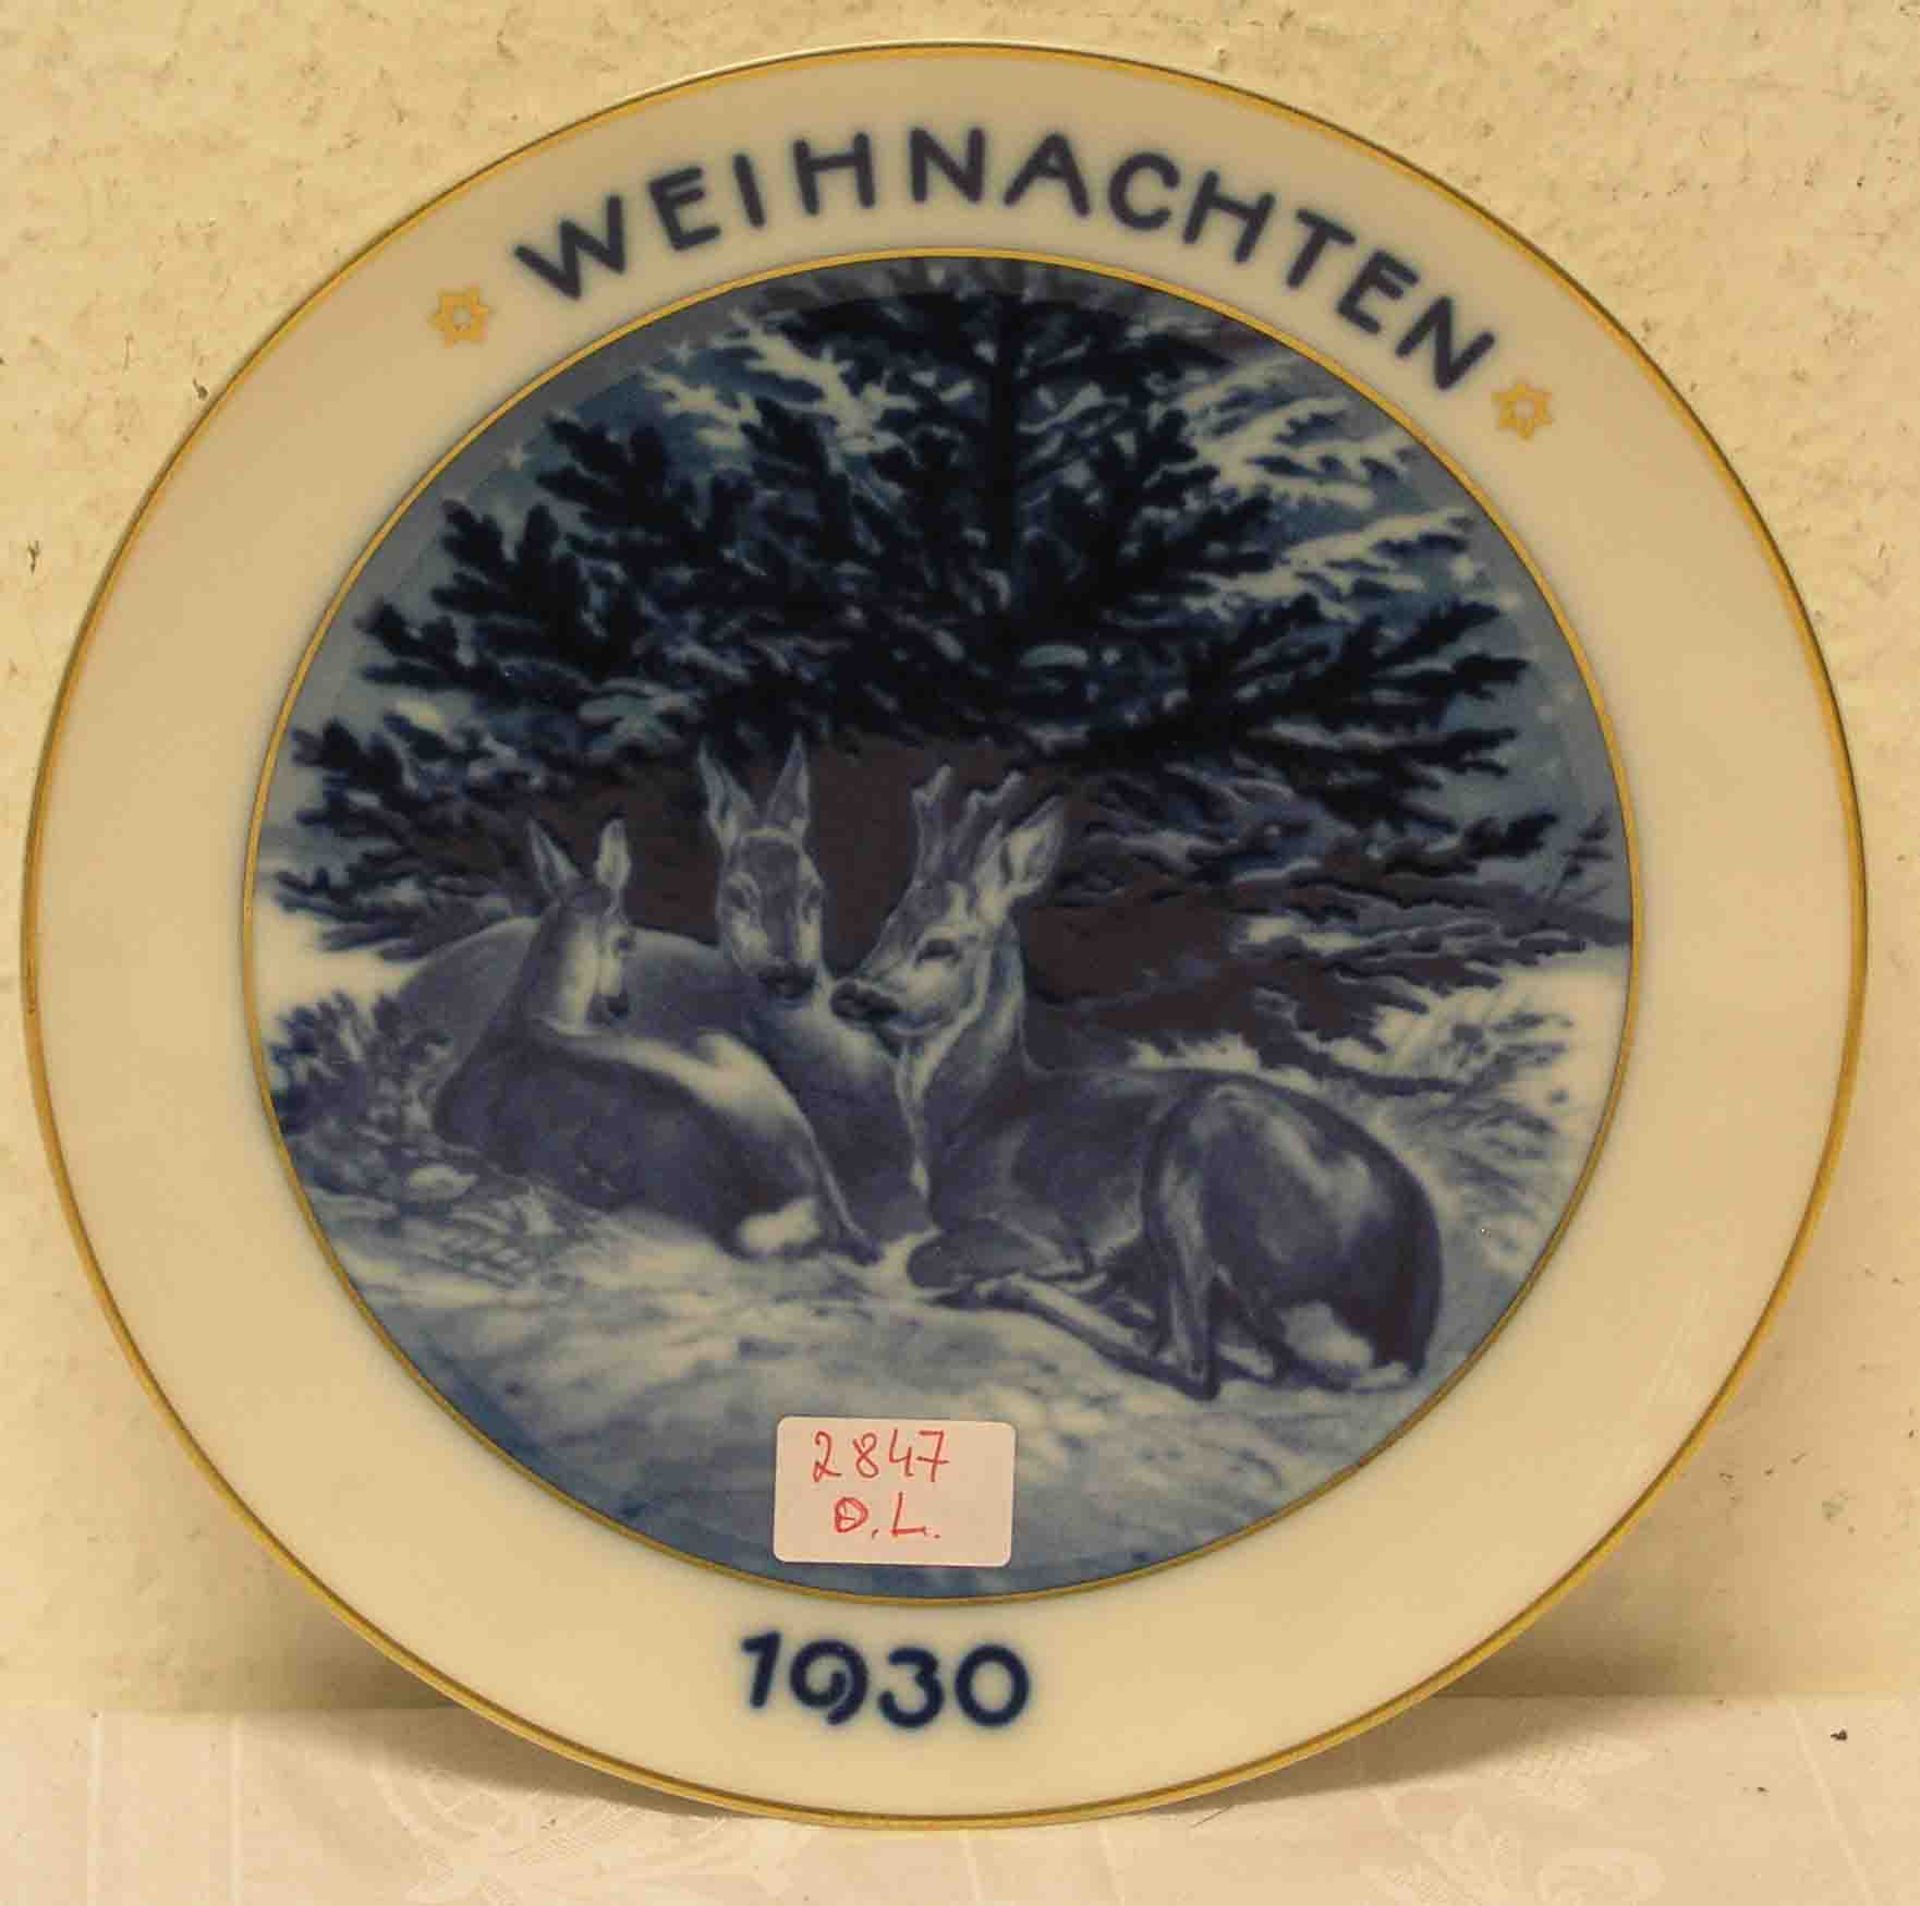 Weihnachten 1930: Porzellanteller. Rosenthal, Entwurf Theodor Kärner, Durchmesser: 21,5cm.